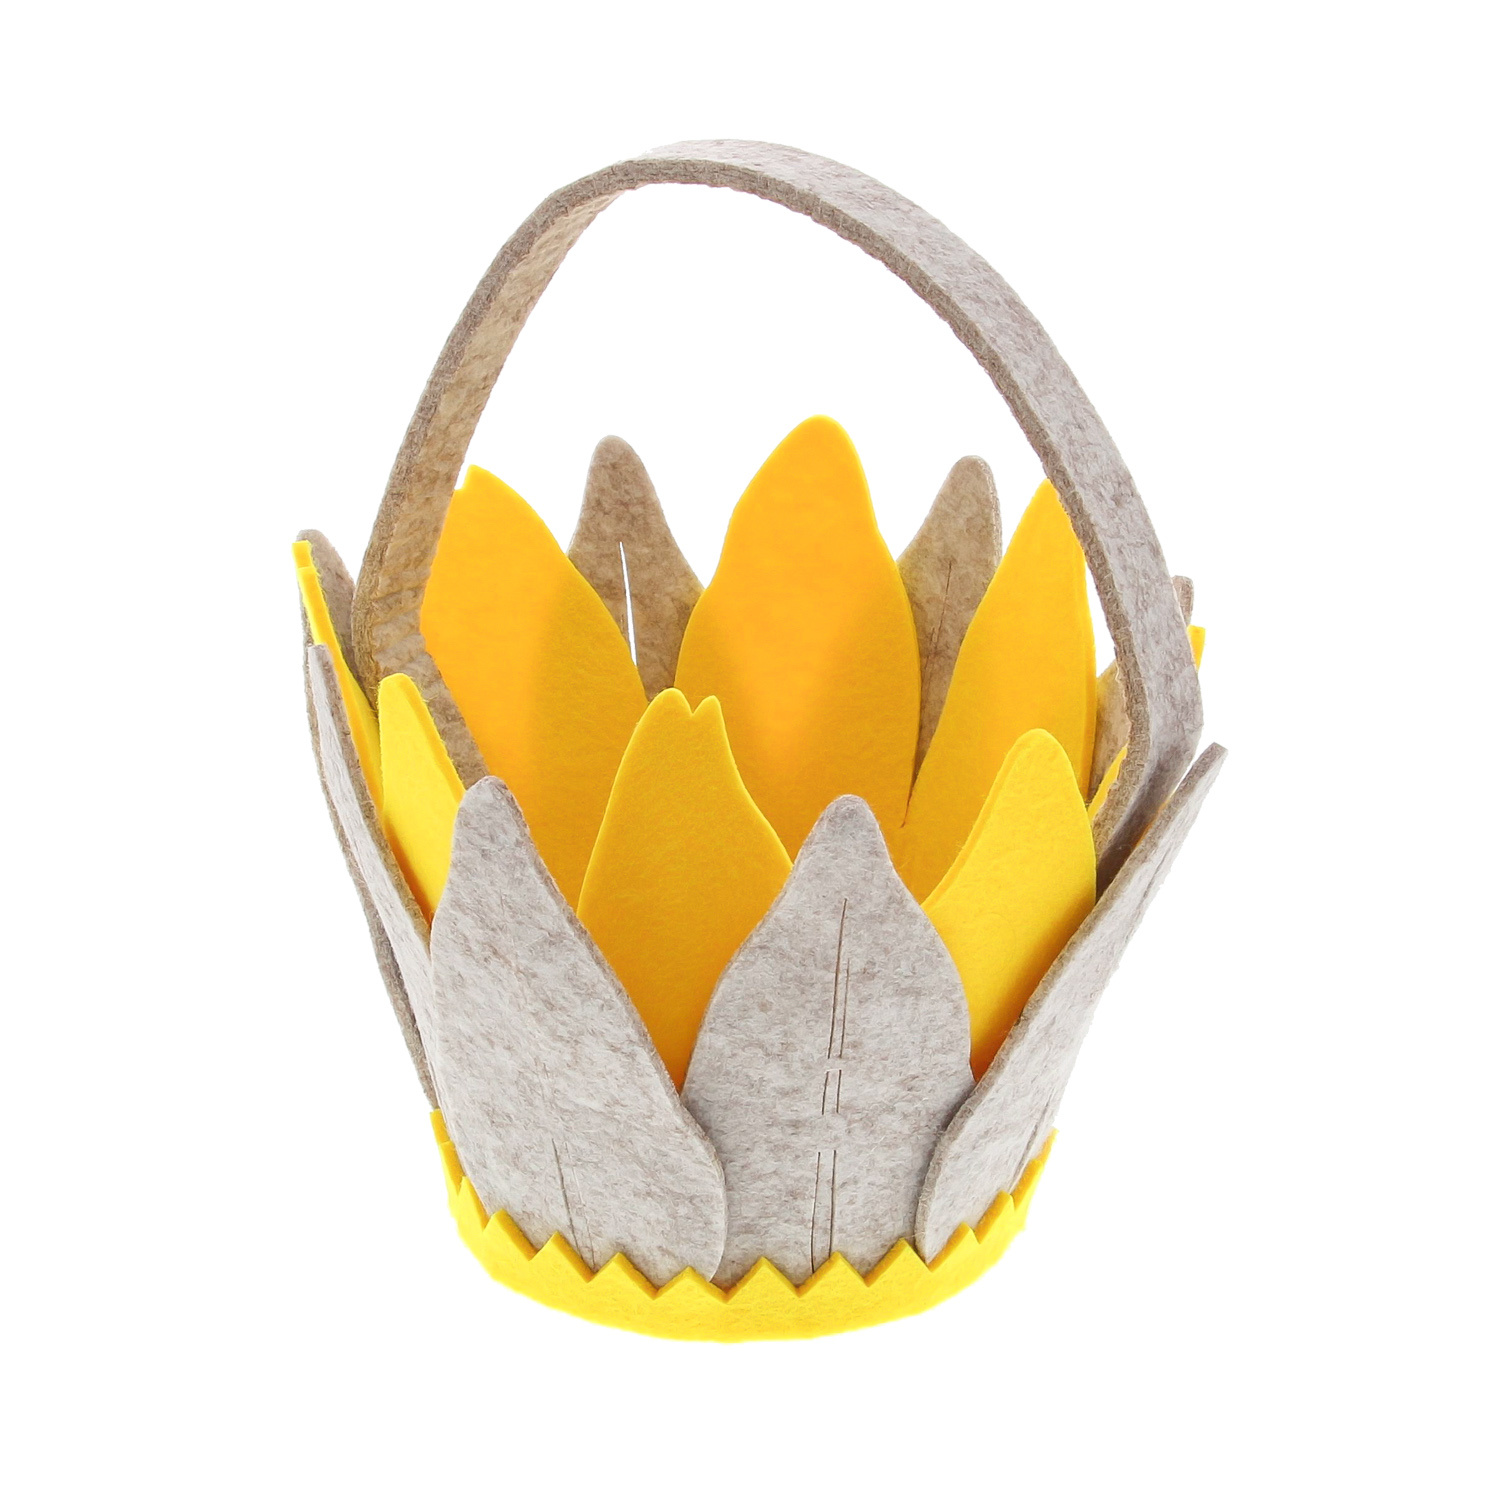 Filzkorb "Lotus" beige-gelb - 200*200*230 mm - 6 Stück